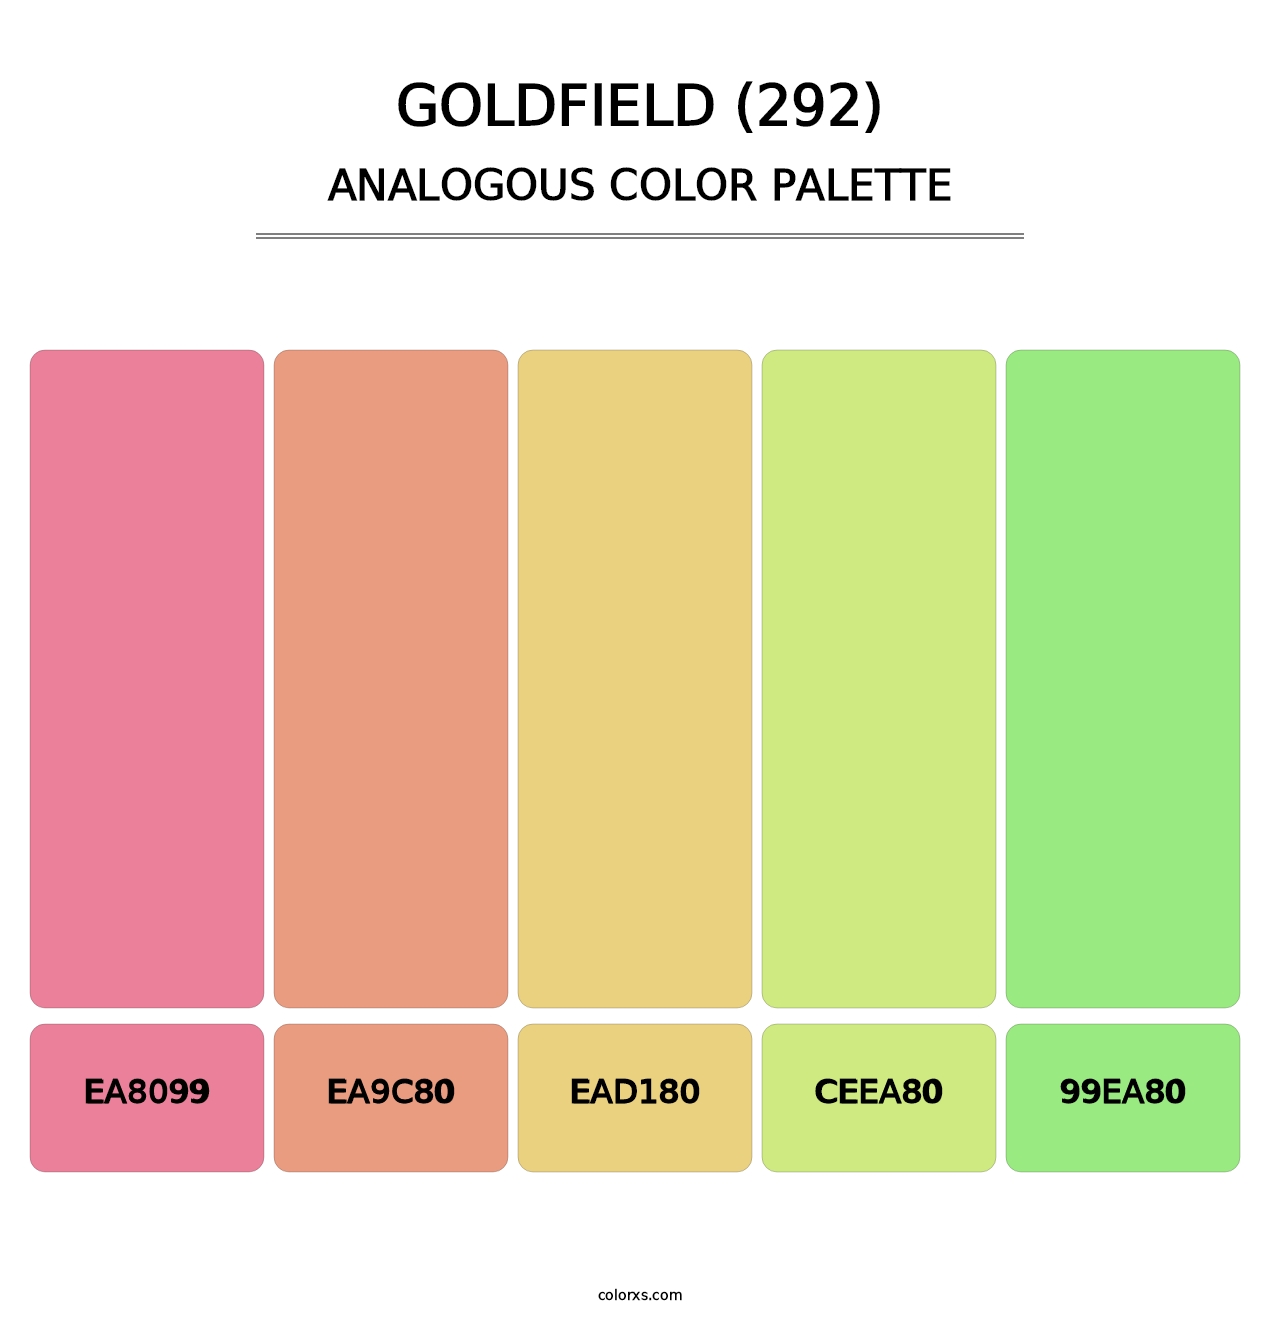 Goldfield (292) - Analogous Color Palette